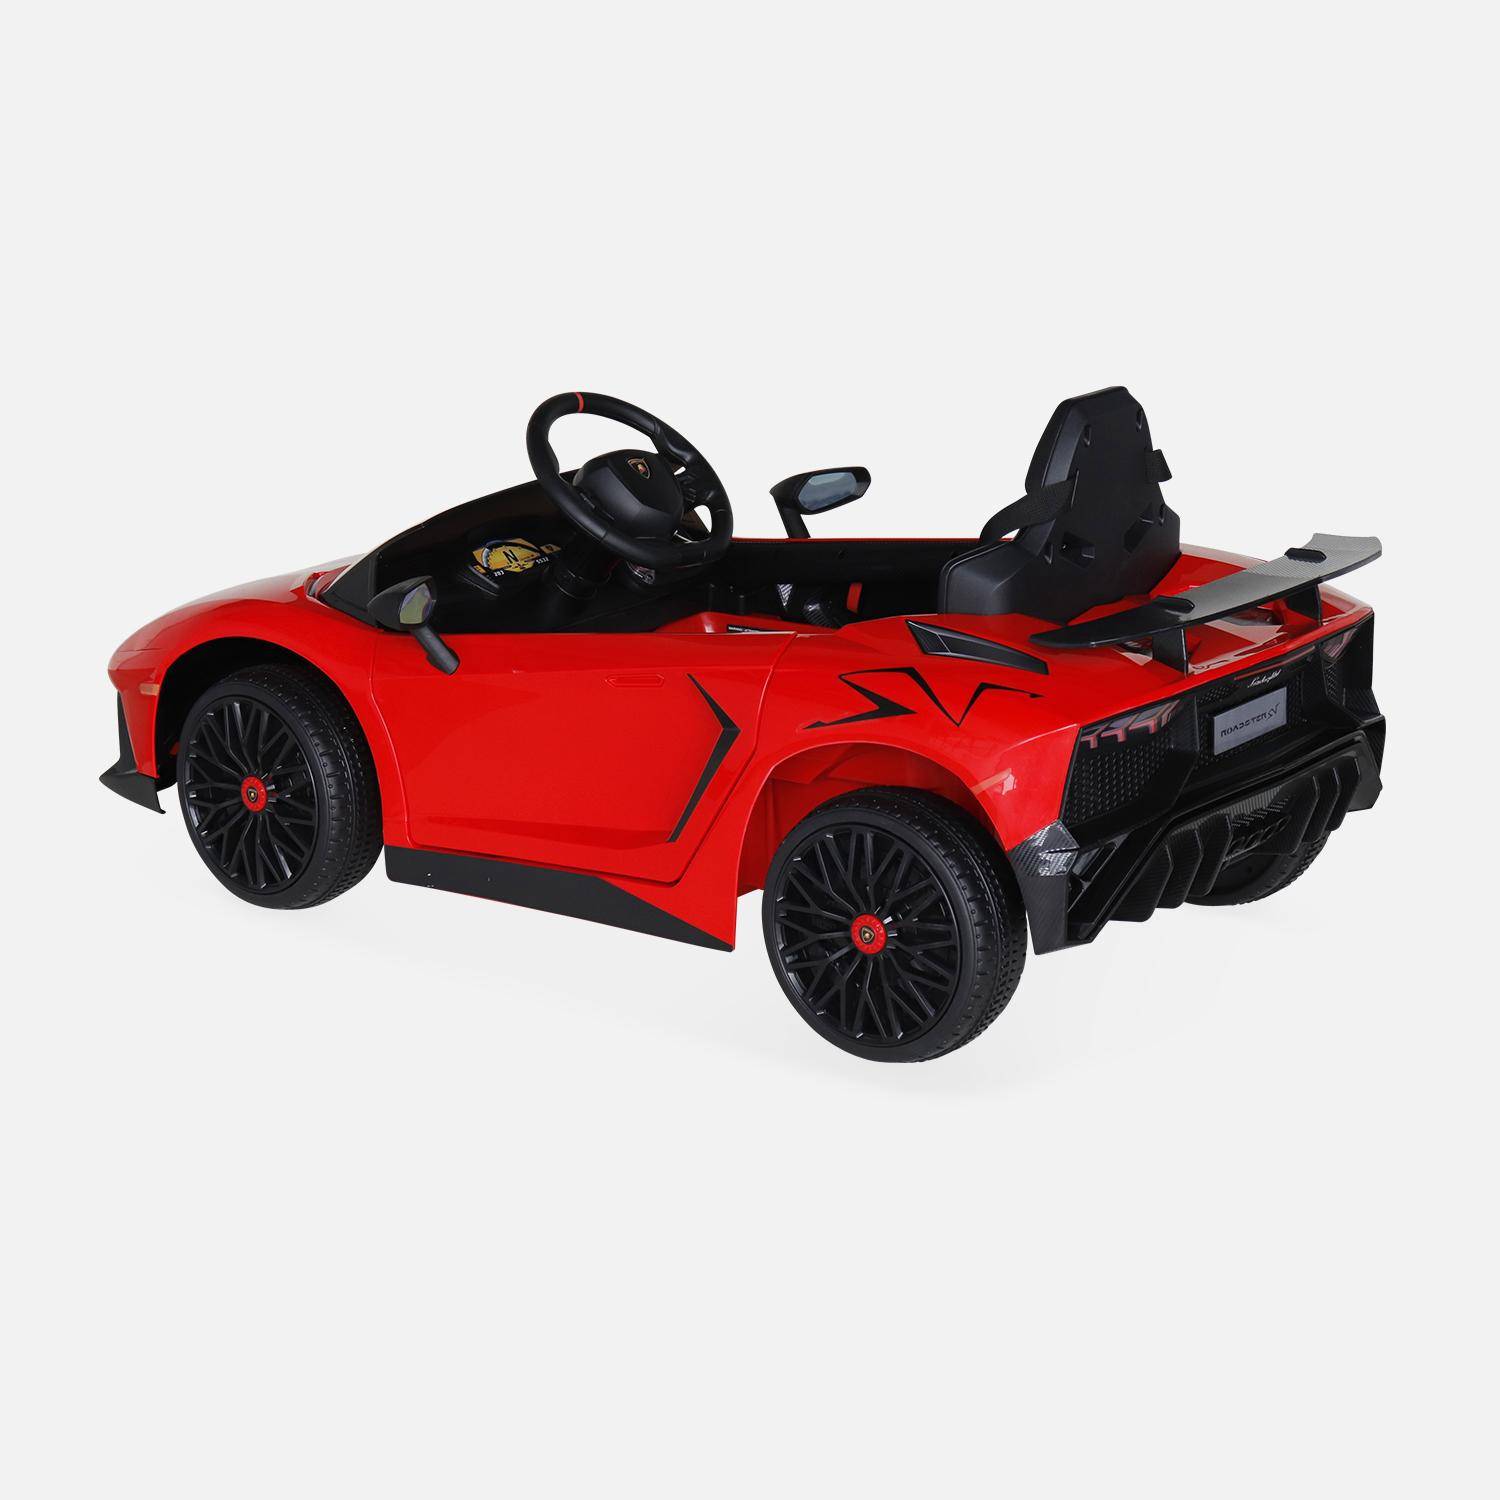 12V Lamborghini elektrische kinderauto, rood, 1 zitplaats, met autoradio, afstandsbediening, MP3, USB-poort en koplampen. Snelle levering, 2 jaar garantie.,sweeek,Photo3